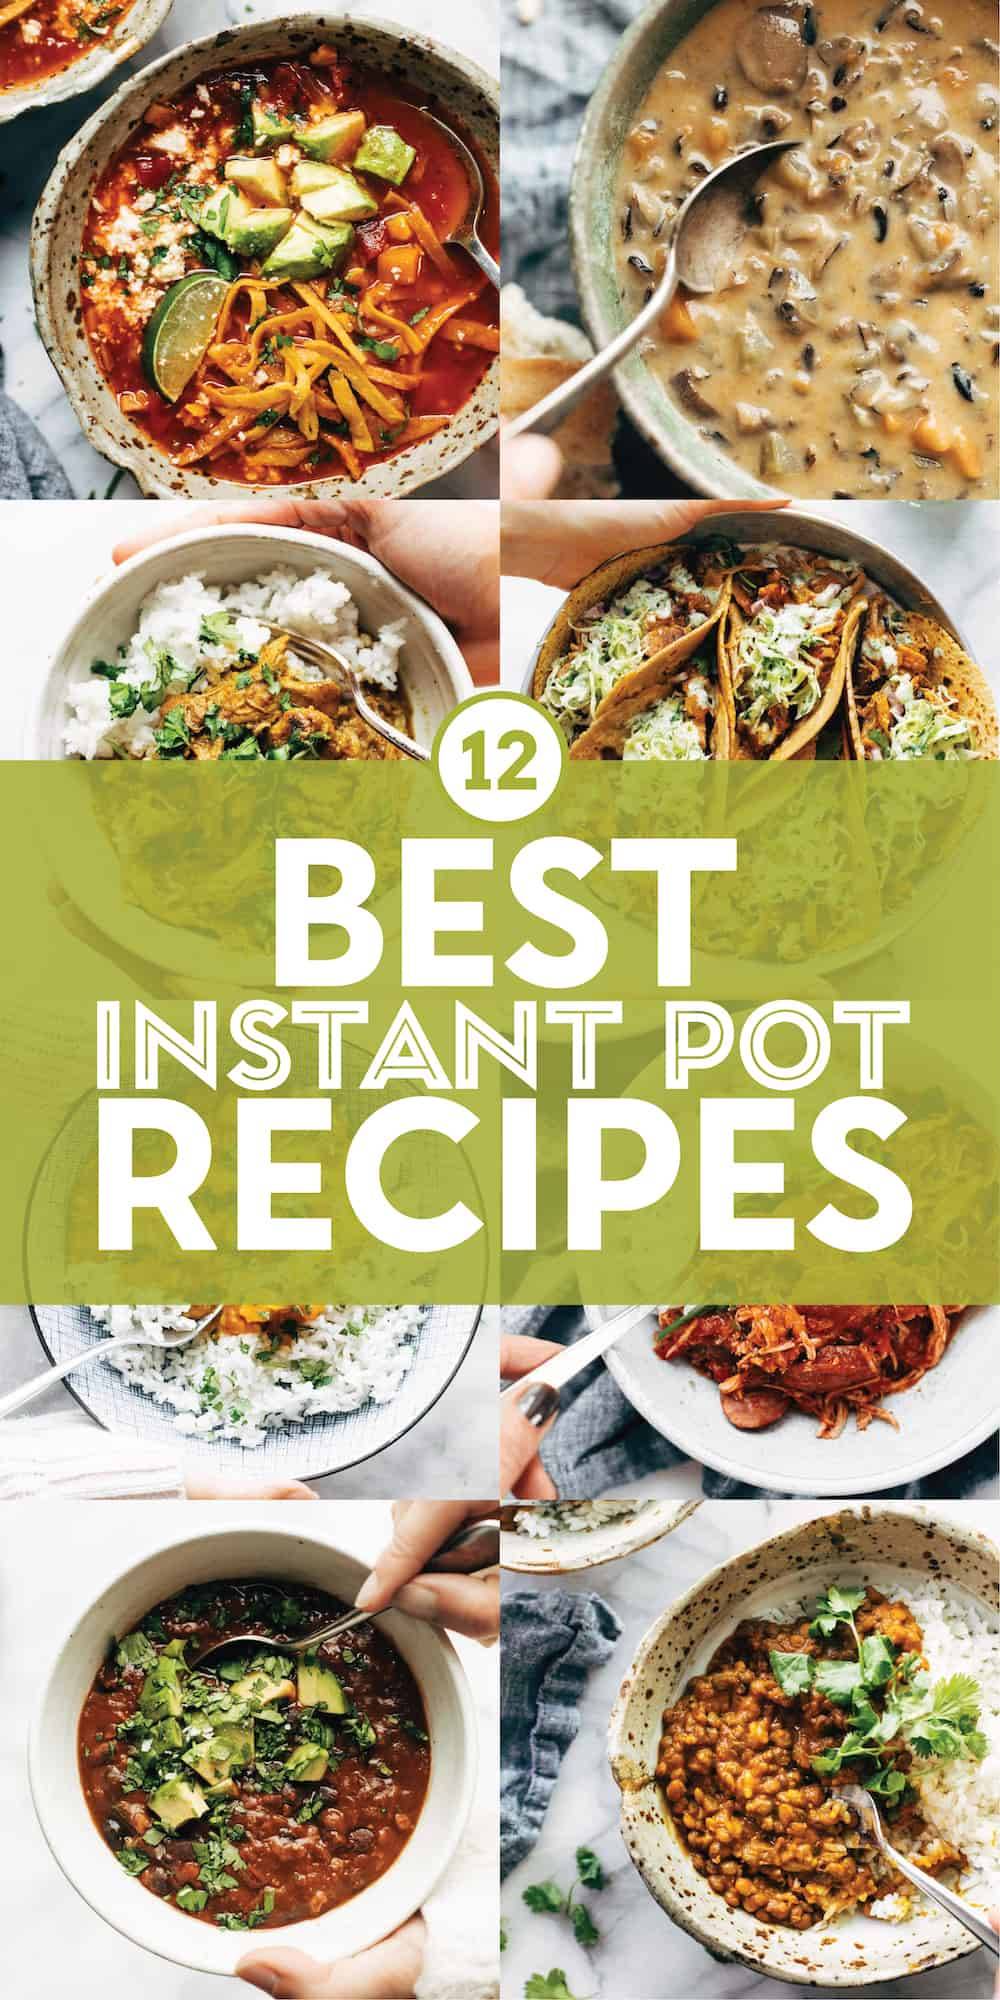 https://pinchofyum.com/wp-content/uploads/Best-Instant-Pot-Recipes-Pin.jpg